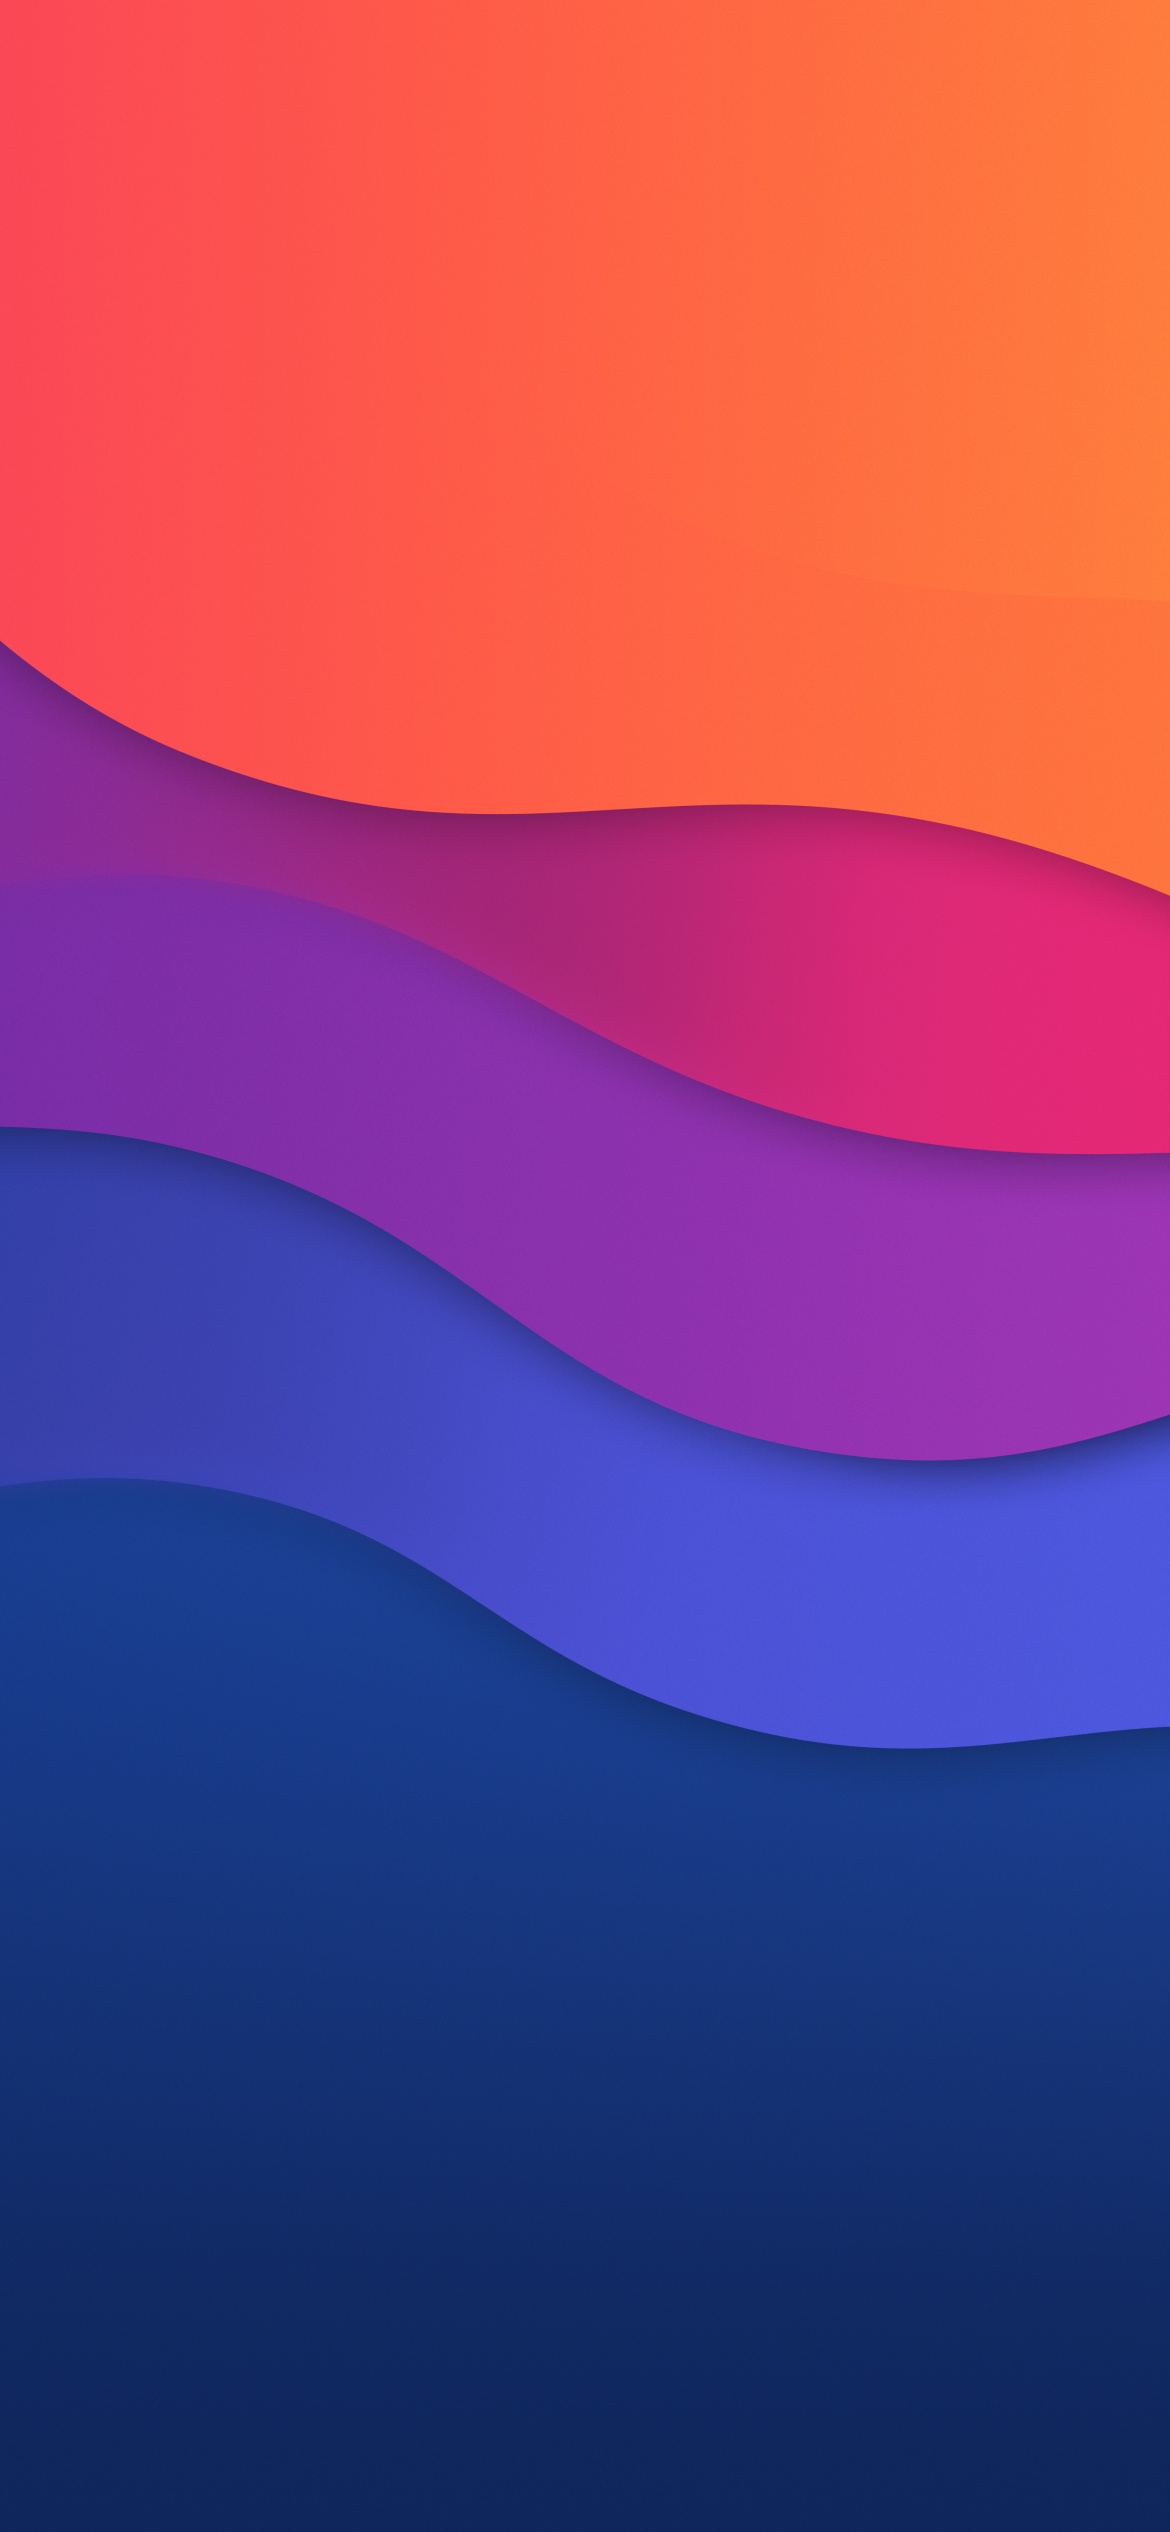 macOS Big Sur Wallpaper 4K, 5K, Colorful, Waves